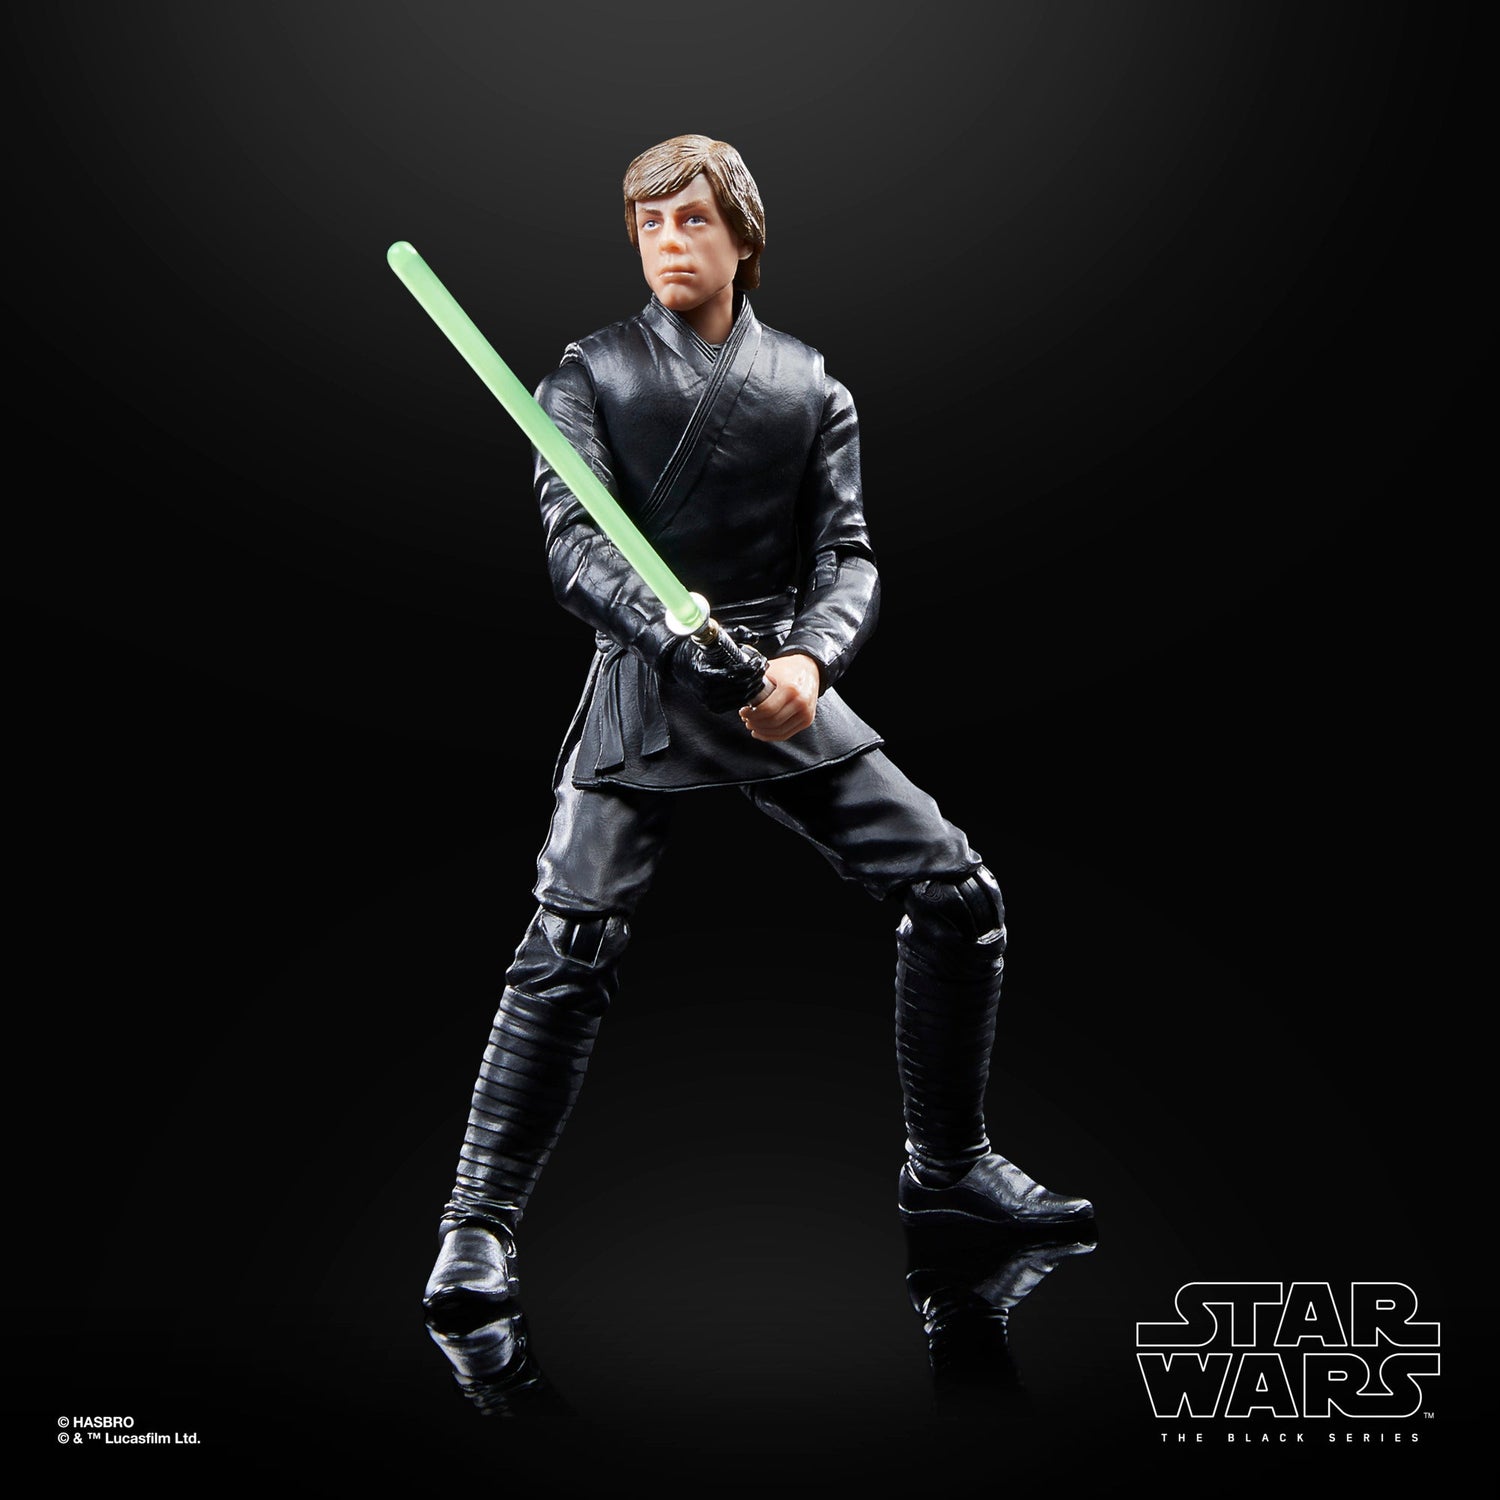 Star Wars: The Black Series Luke Skywalker & Grogu 2 Pack Hasbro